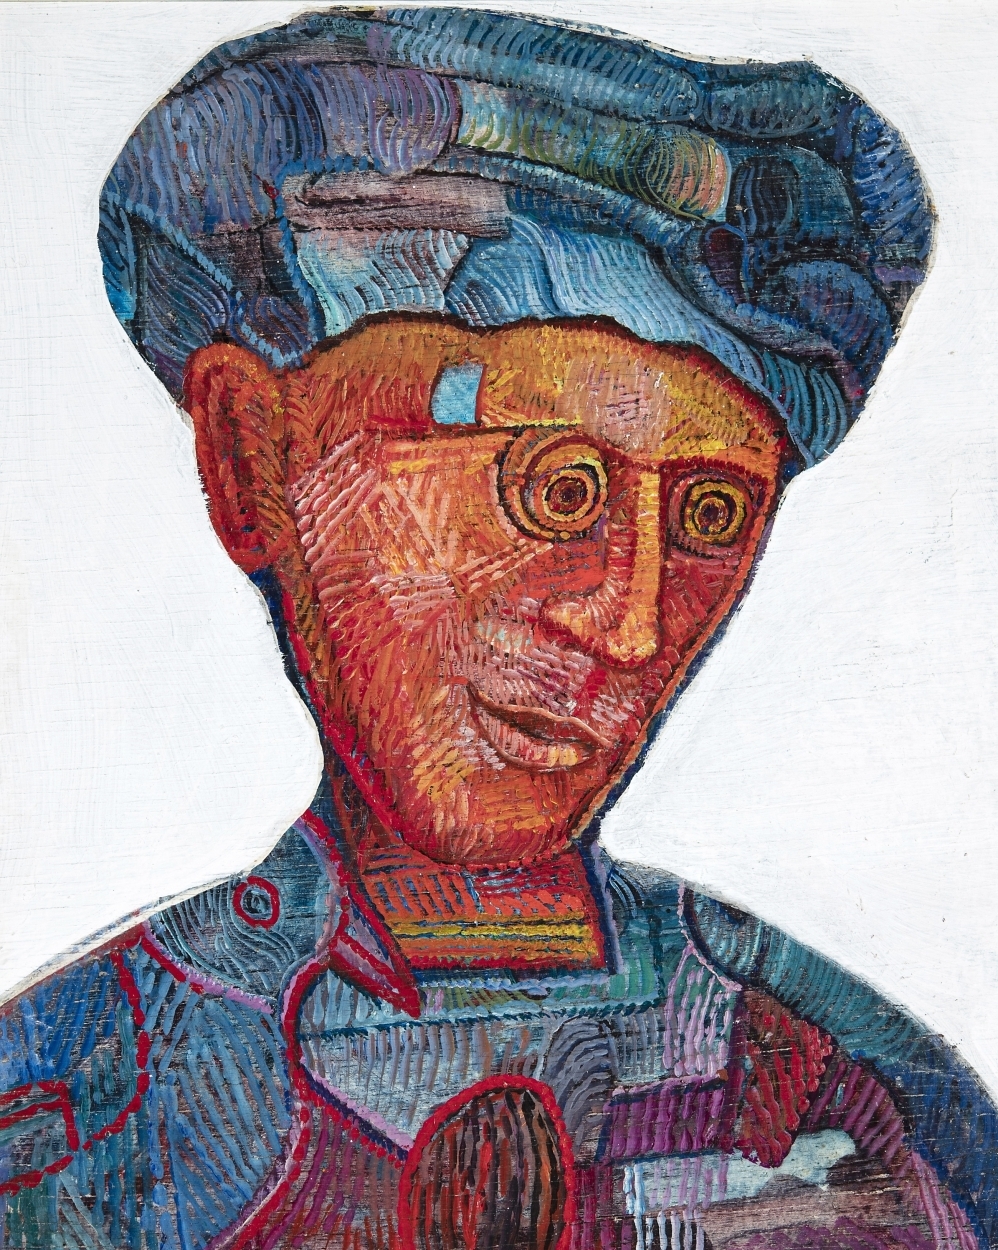 Szabó, Joseph 1925-2010 Filozófus arcképe " Guy Debord"- eladó